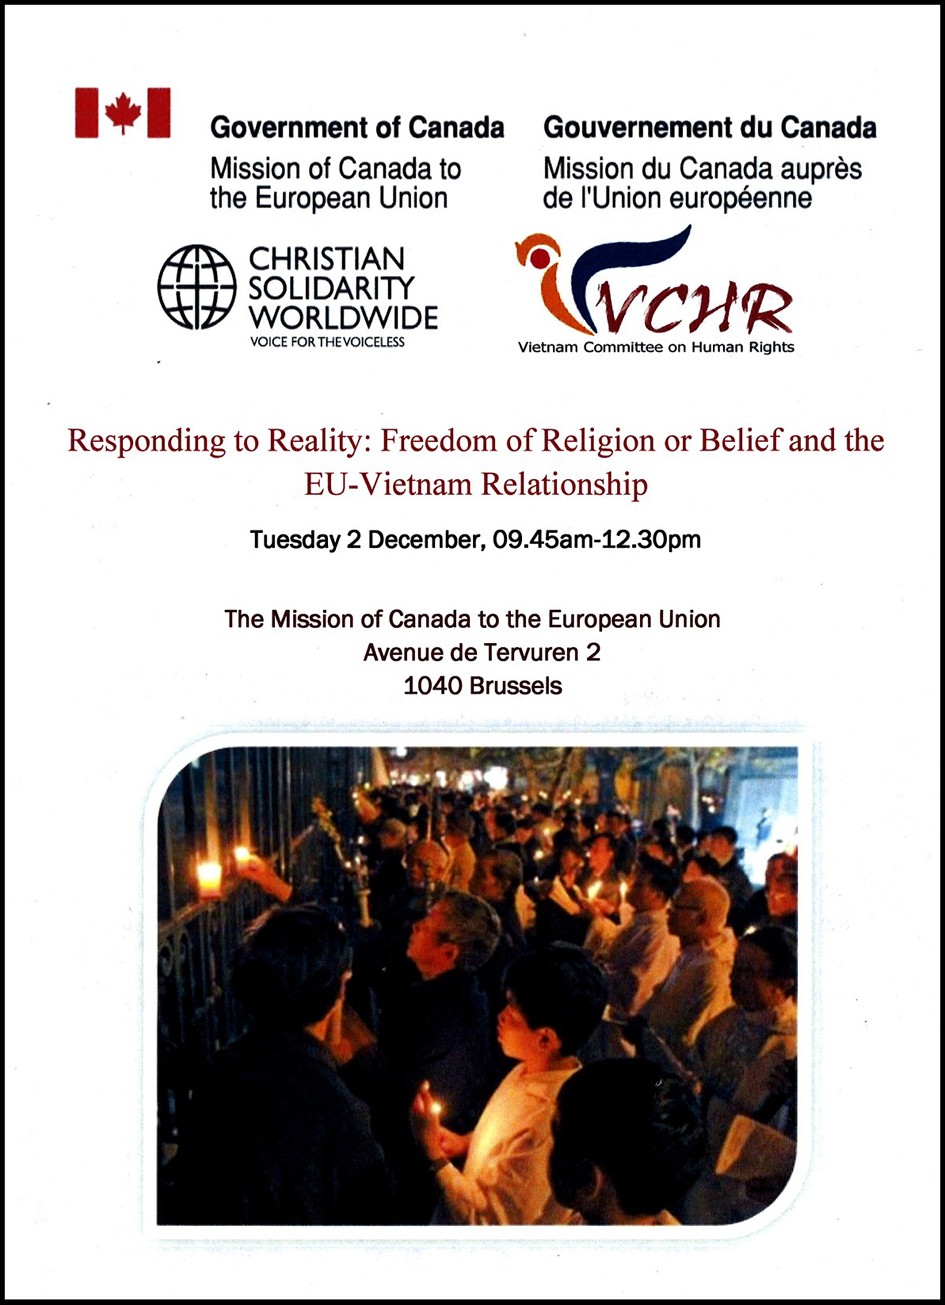 Đại sứ quán Gia Nã Đại cạnh Liên Âu hợp tác với Quê Mẹ & Uỷ ban Bảo vệ Quyền Làm Người Việt Nam và Christian Solidarity Worldwide tổ chức cuộc Hội luận